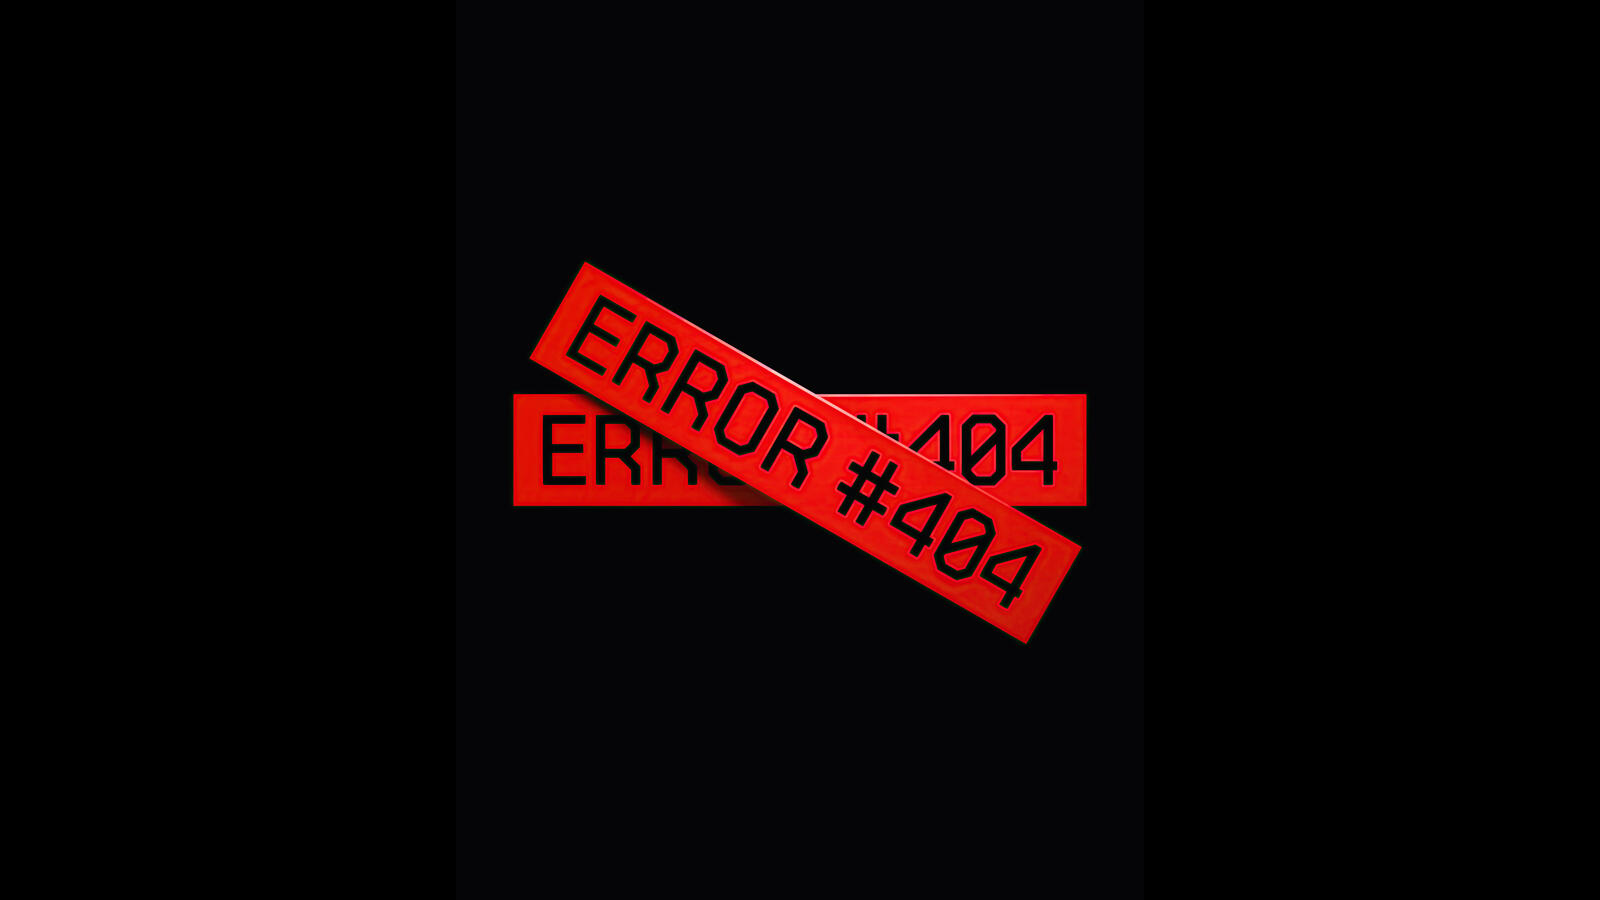 桌面上的壁纸出错 404 计算机